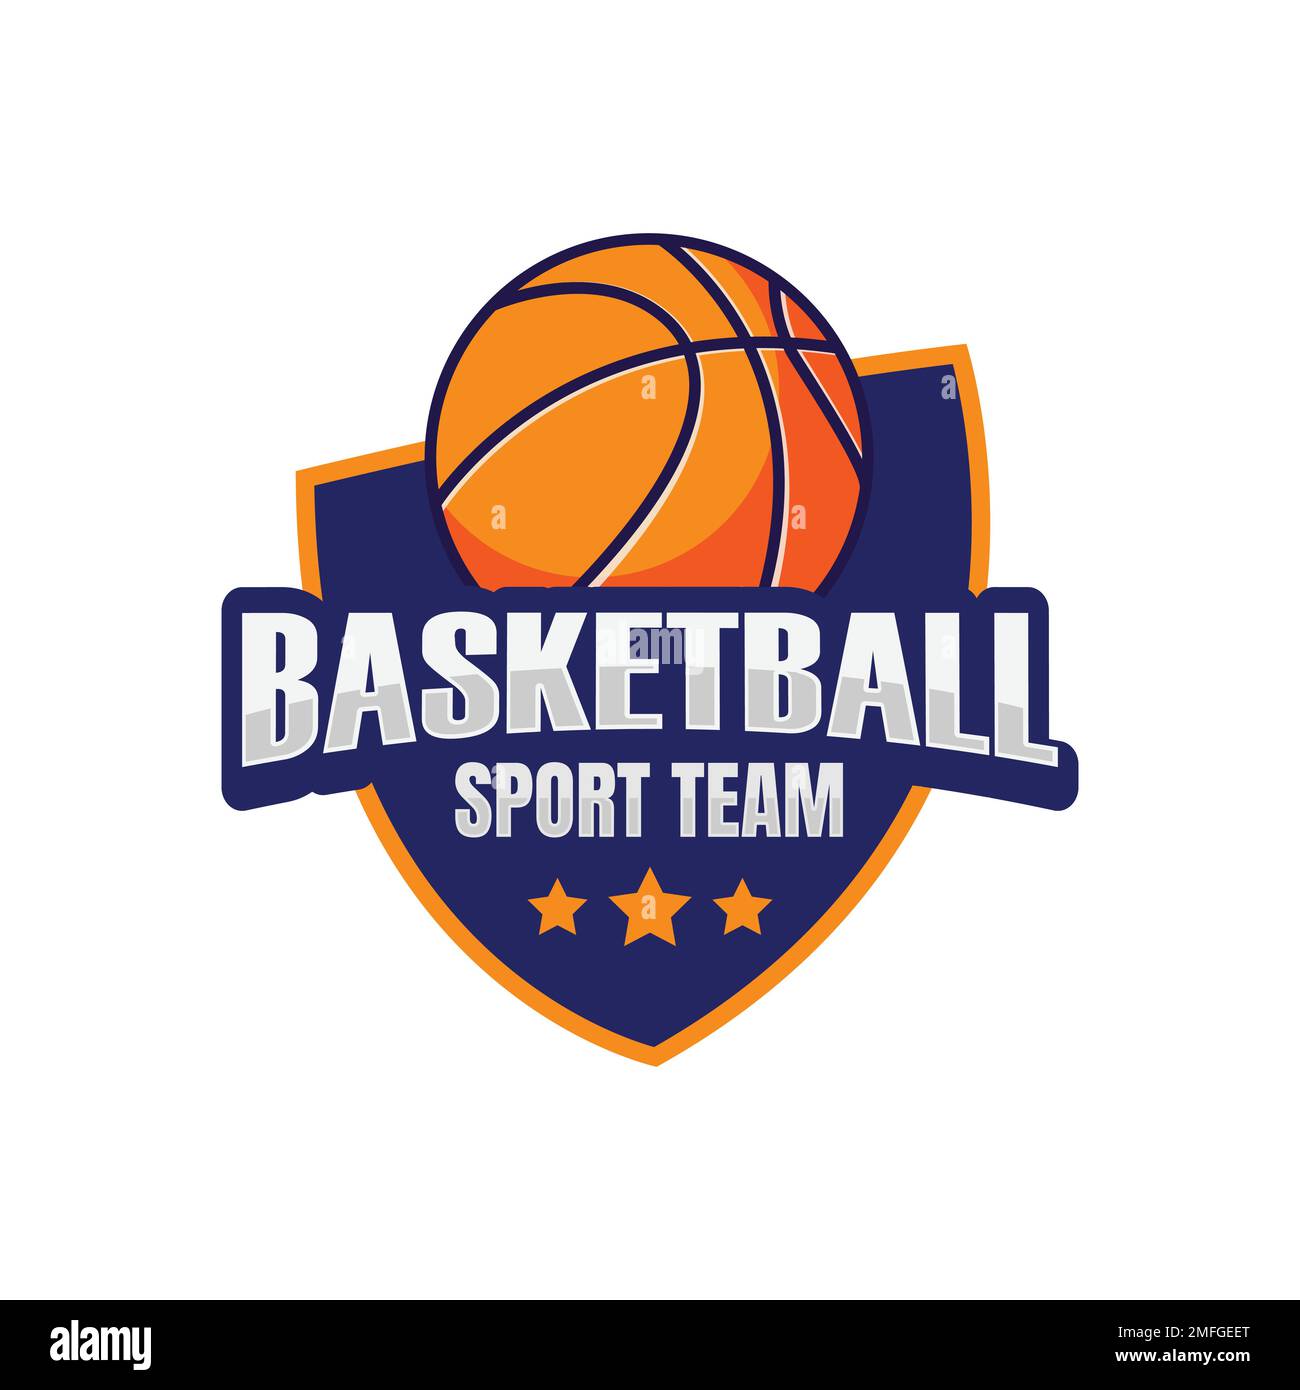 Basketball club logo badge vector image. Basketball Club Logo Template Creator for Sports Team Vector Stock Vector